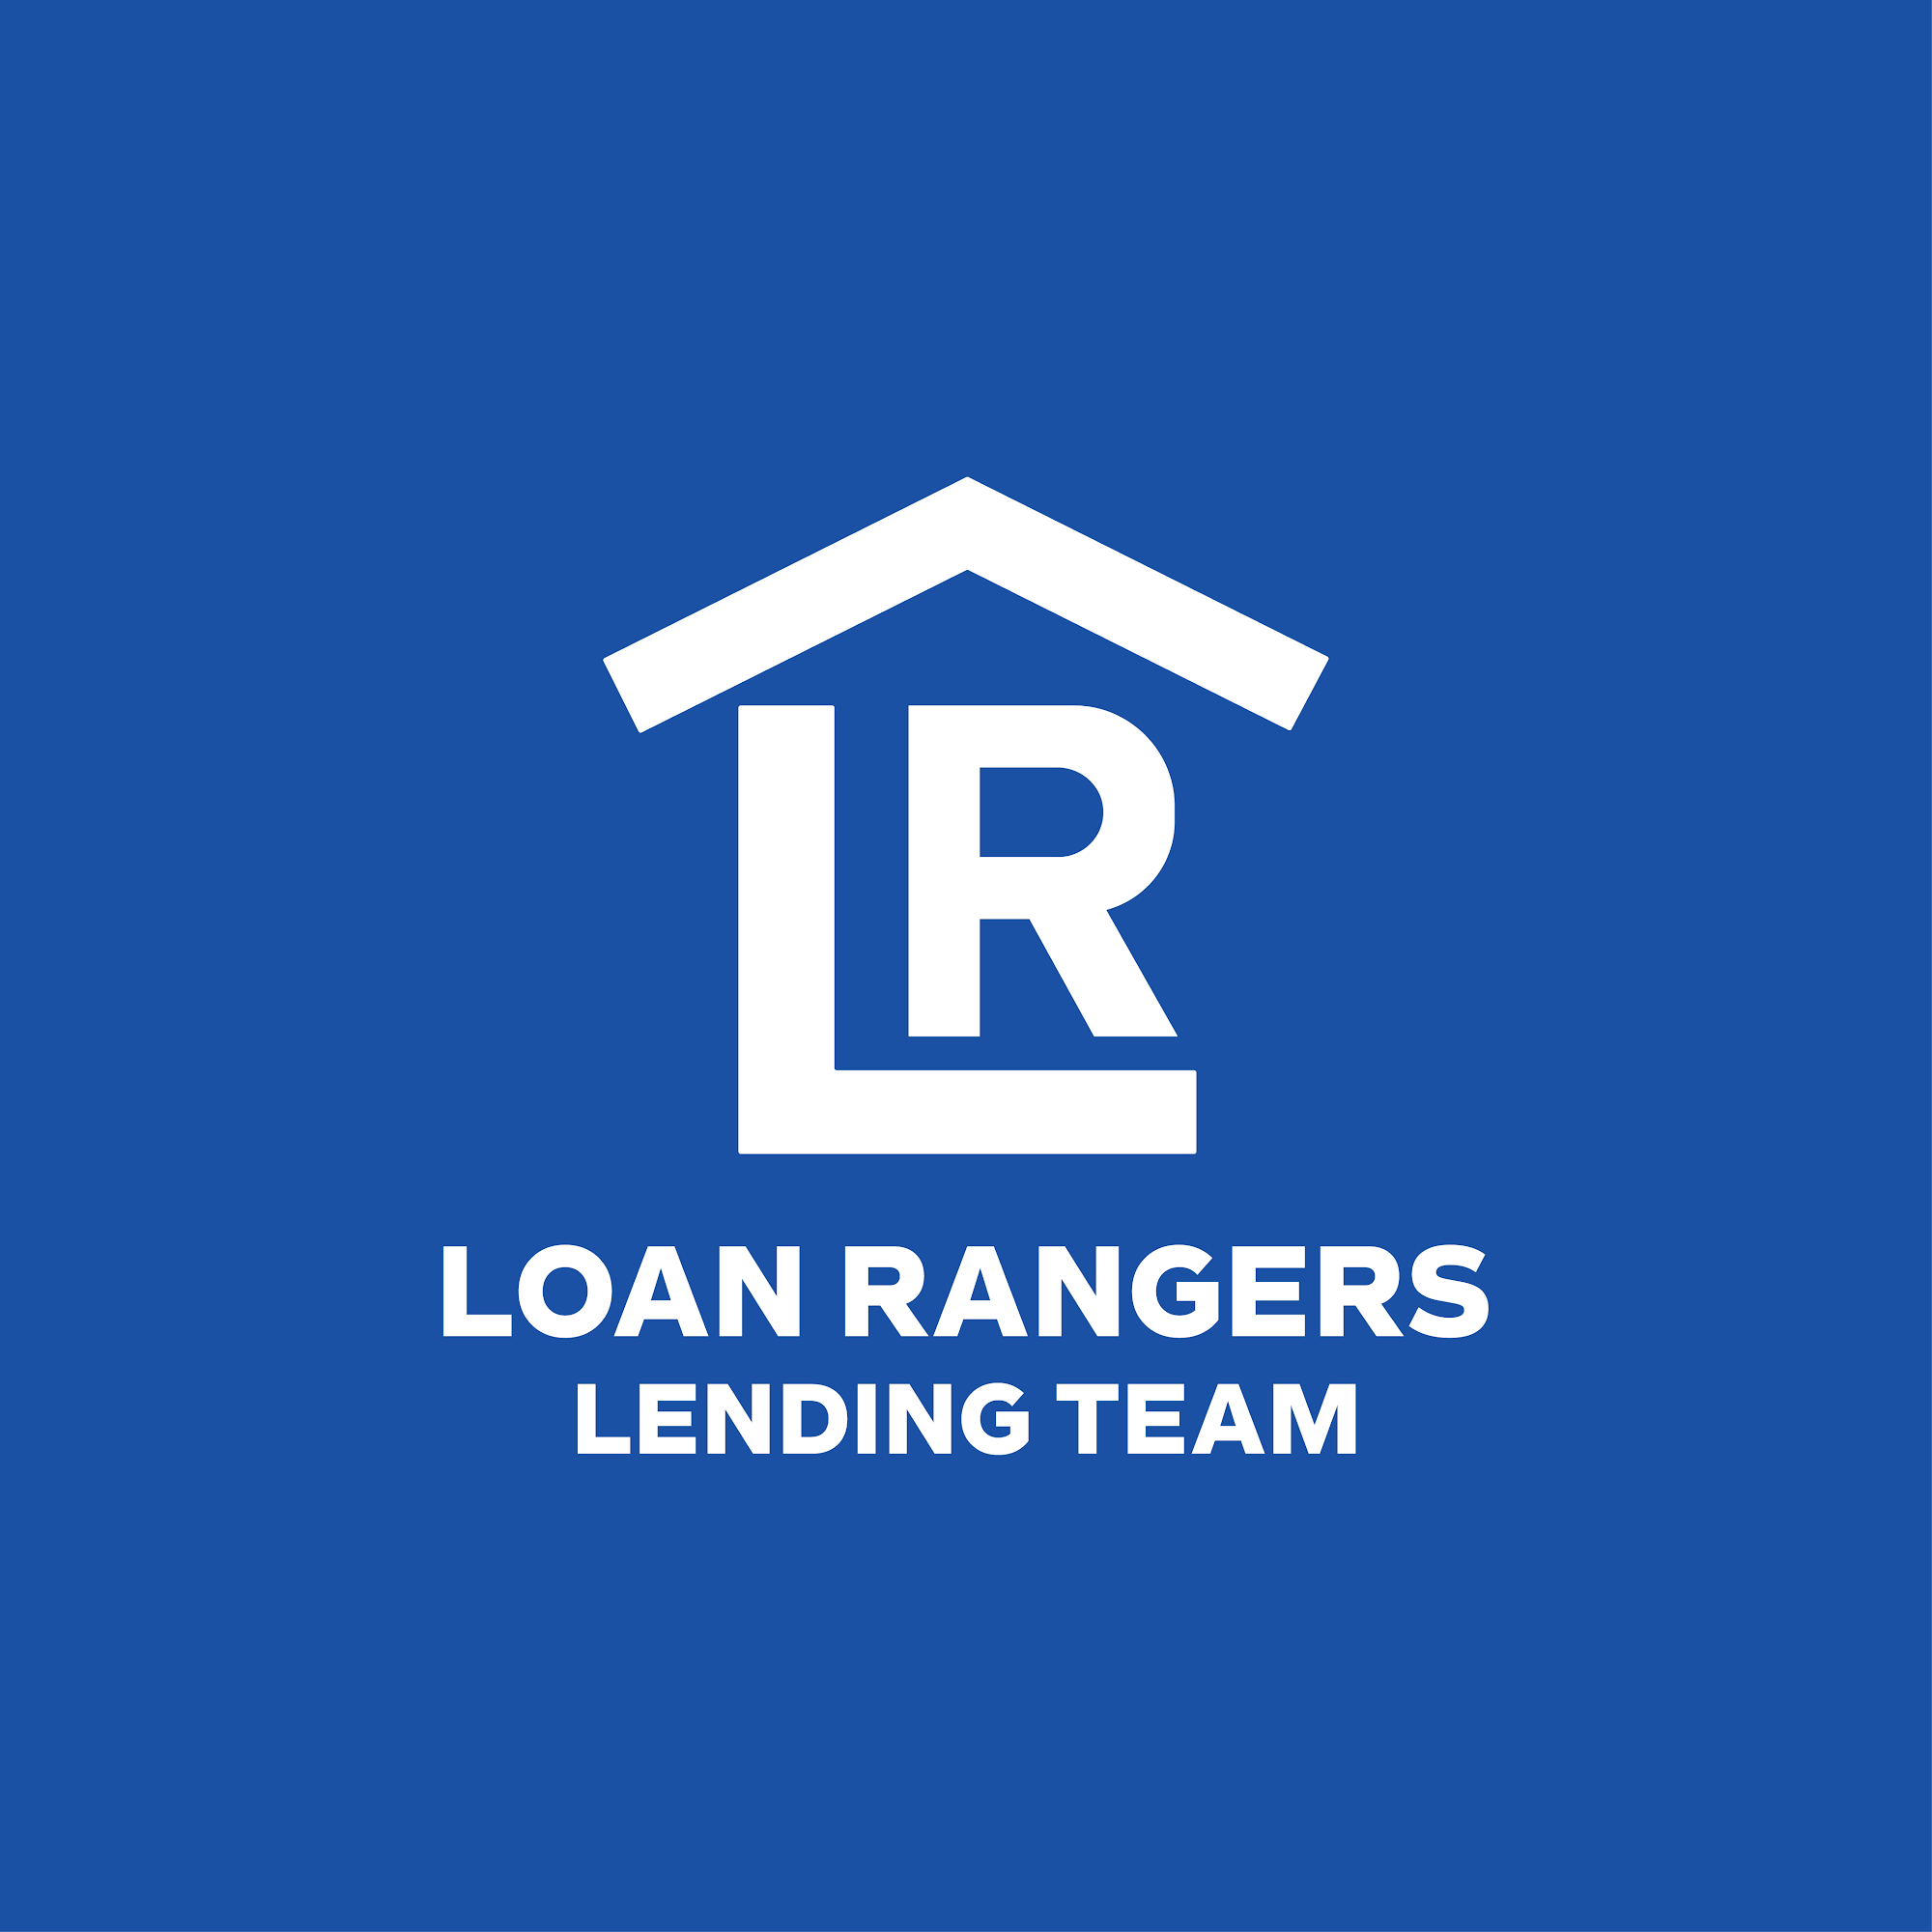 Loan Rangers Lending Team